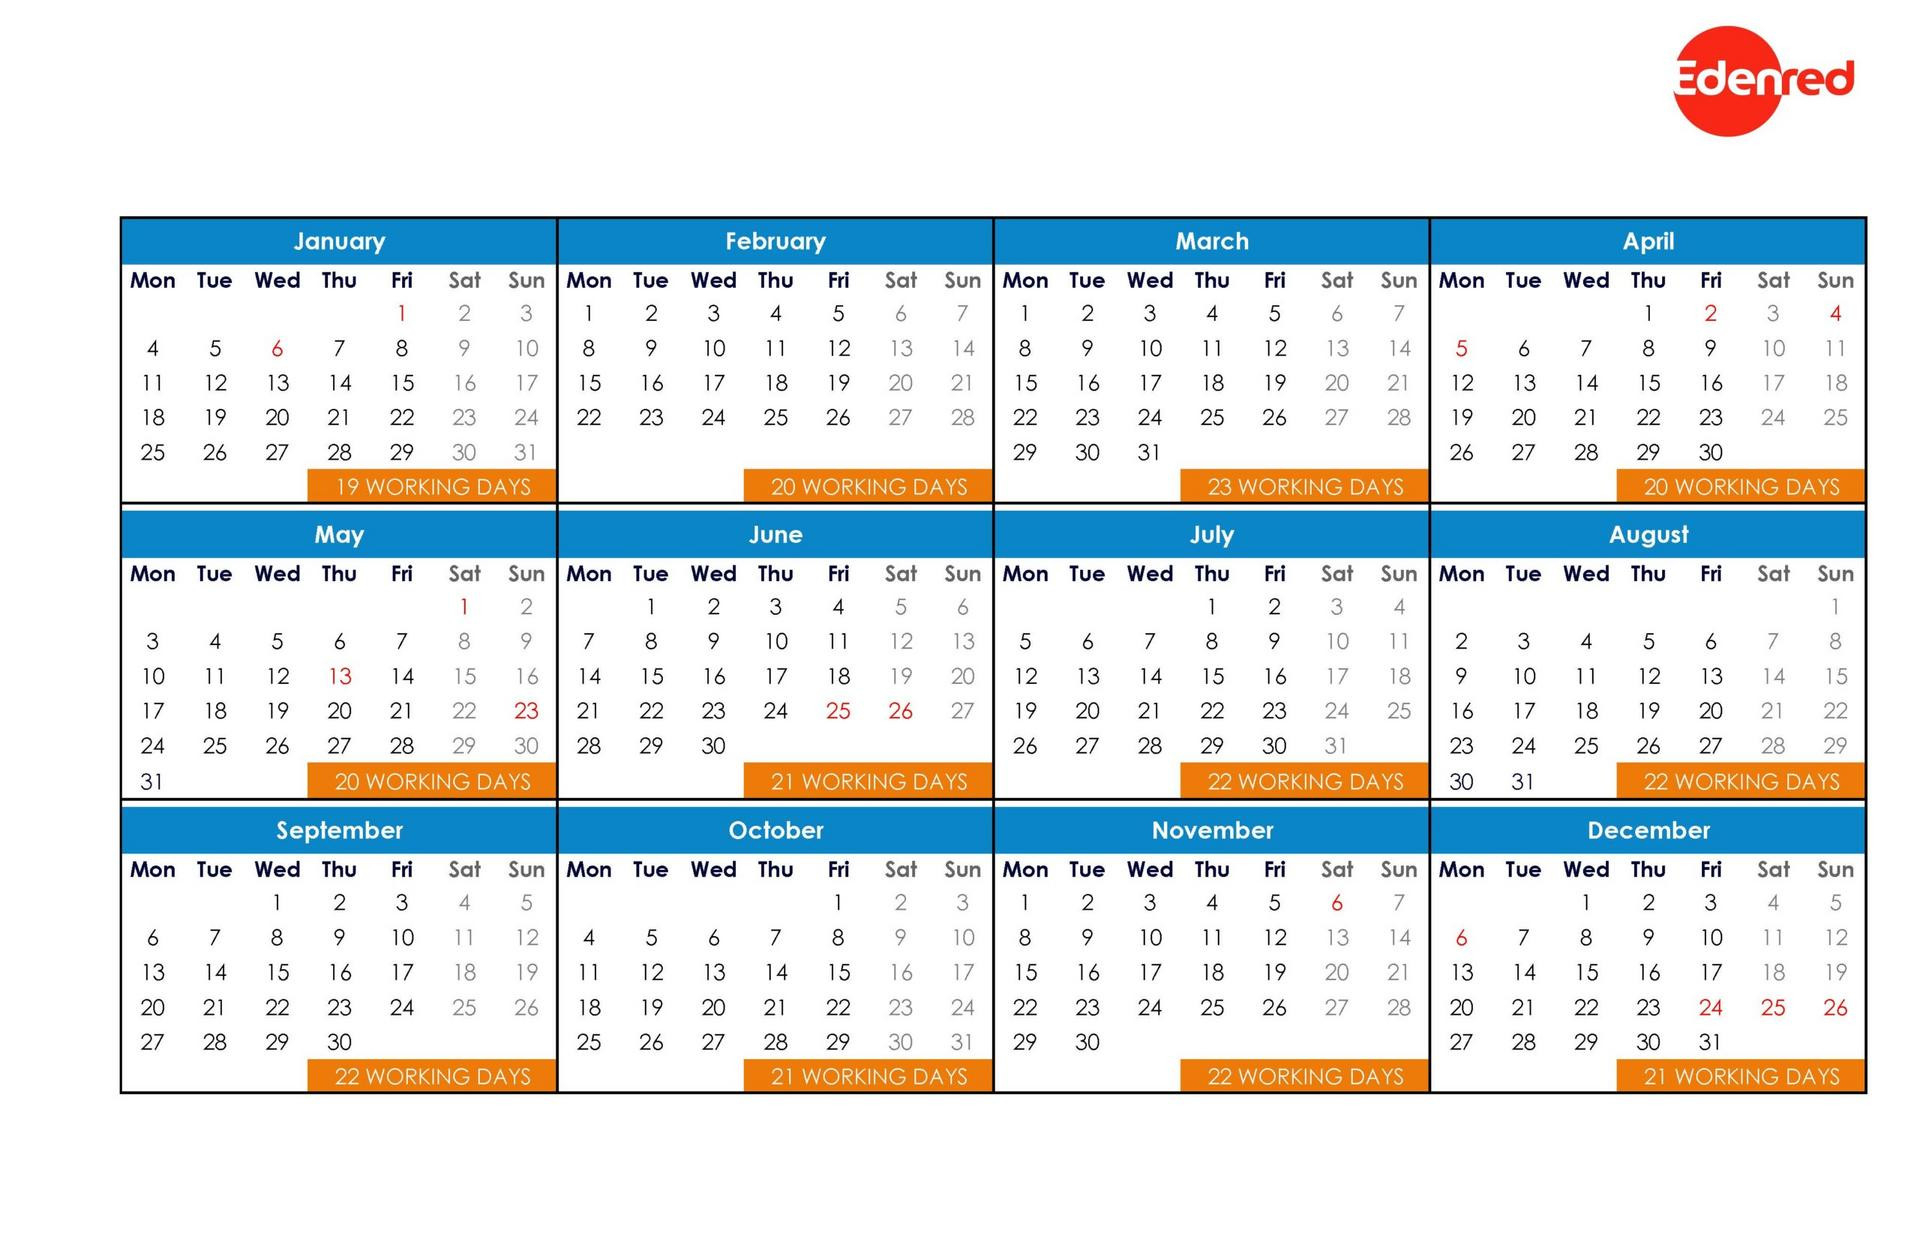 Working Day Calendar 2021 - Edenred-2021 Employee Schedule Planner